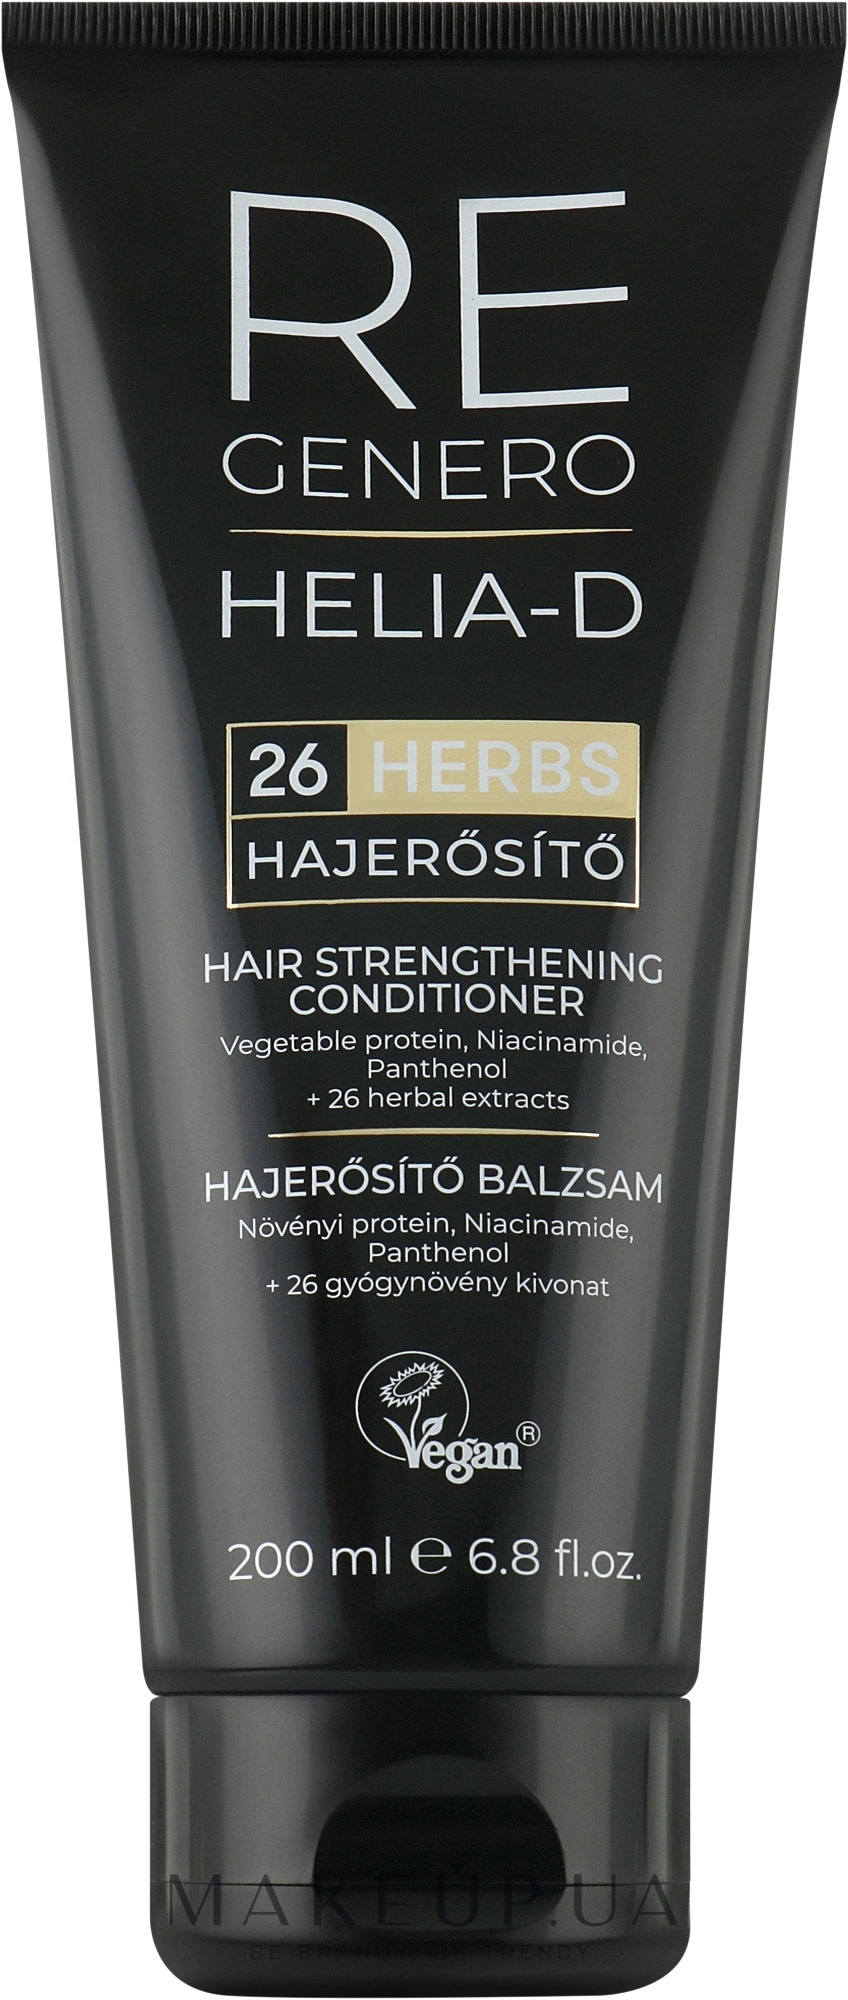 Кондиціонер для зміцнення волосся - Helia-D Regenero Hair Strengthening Conditioner — фото 200ml